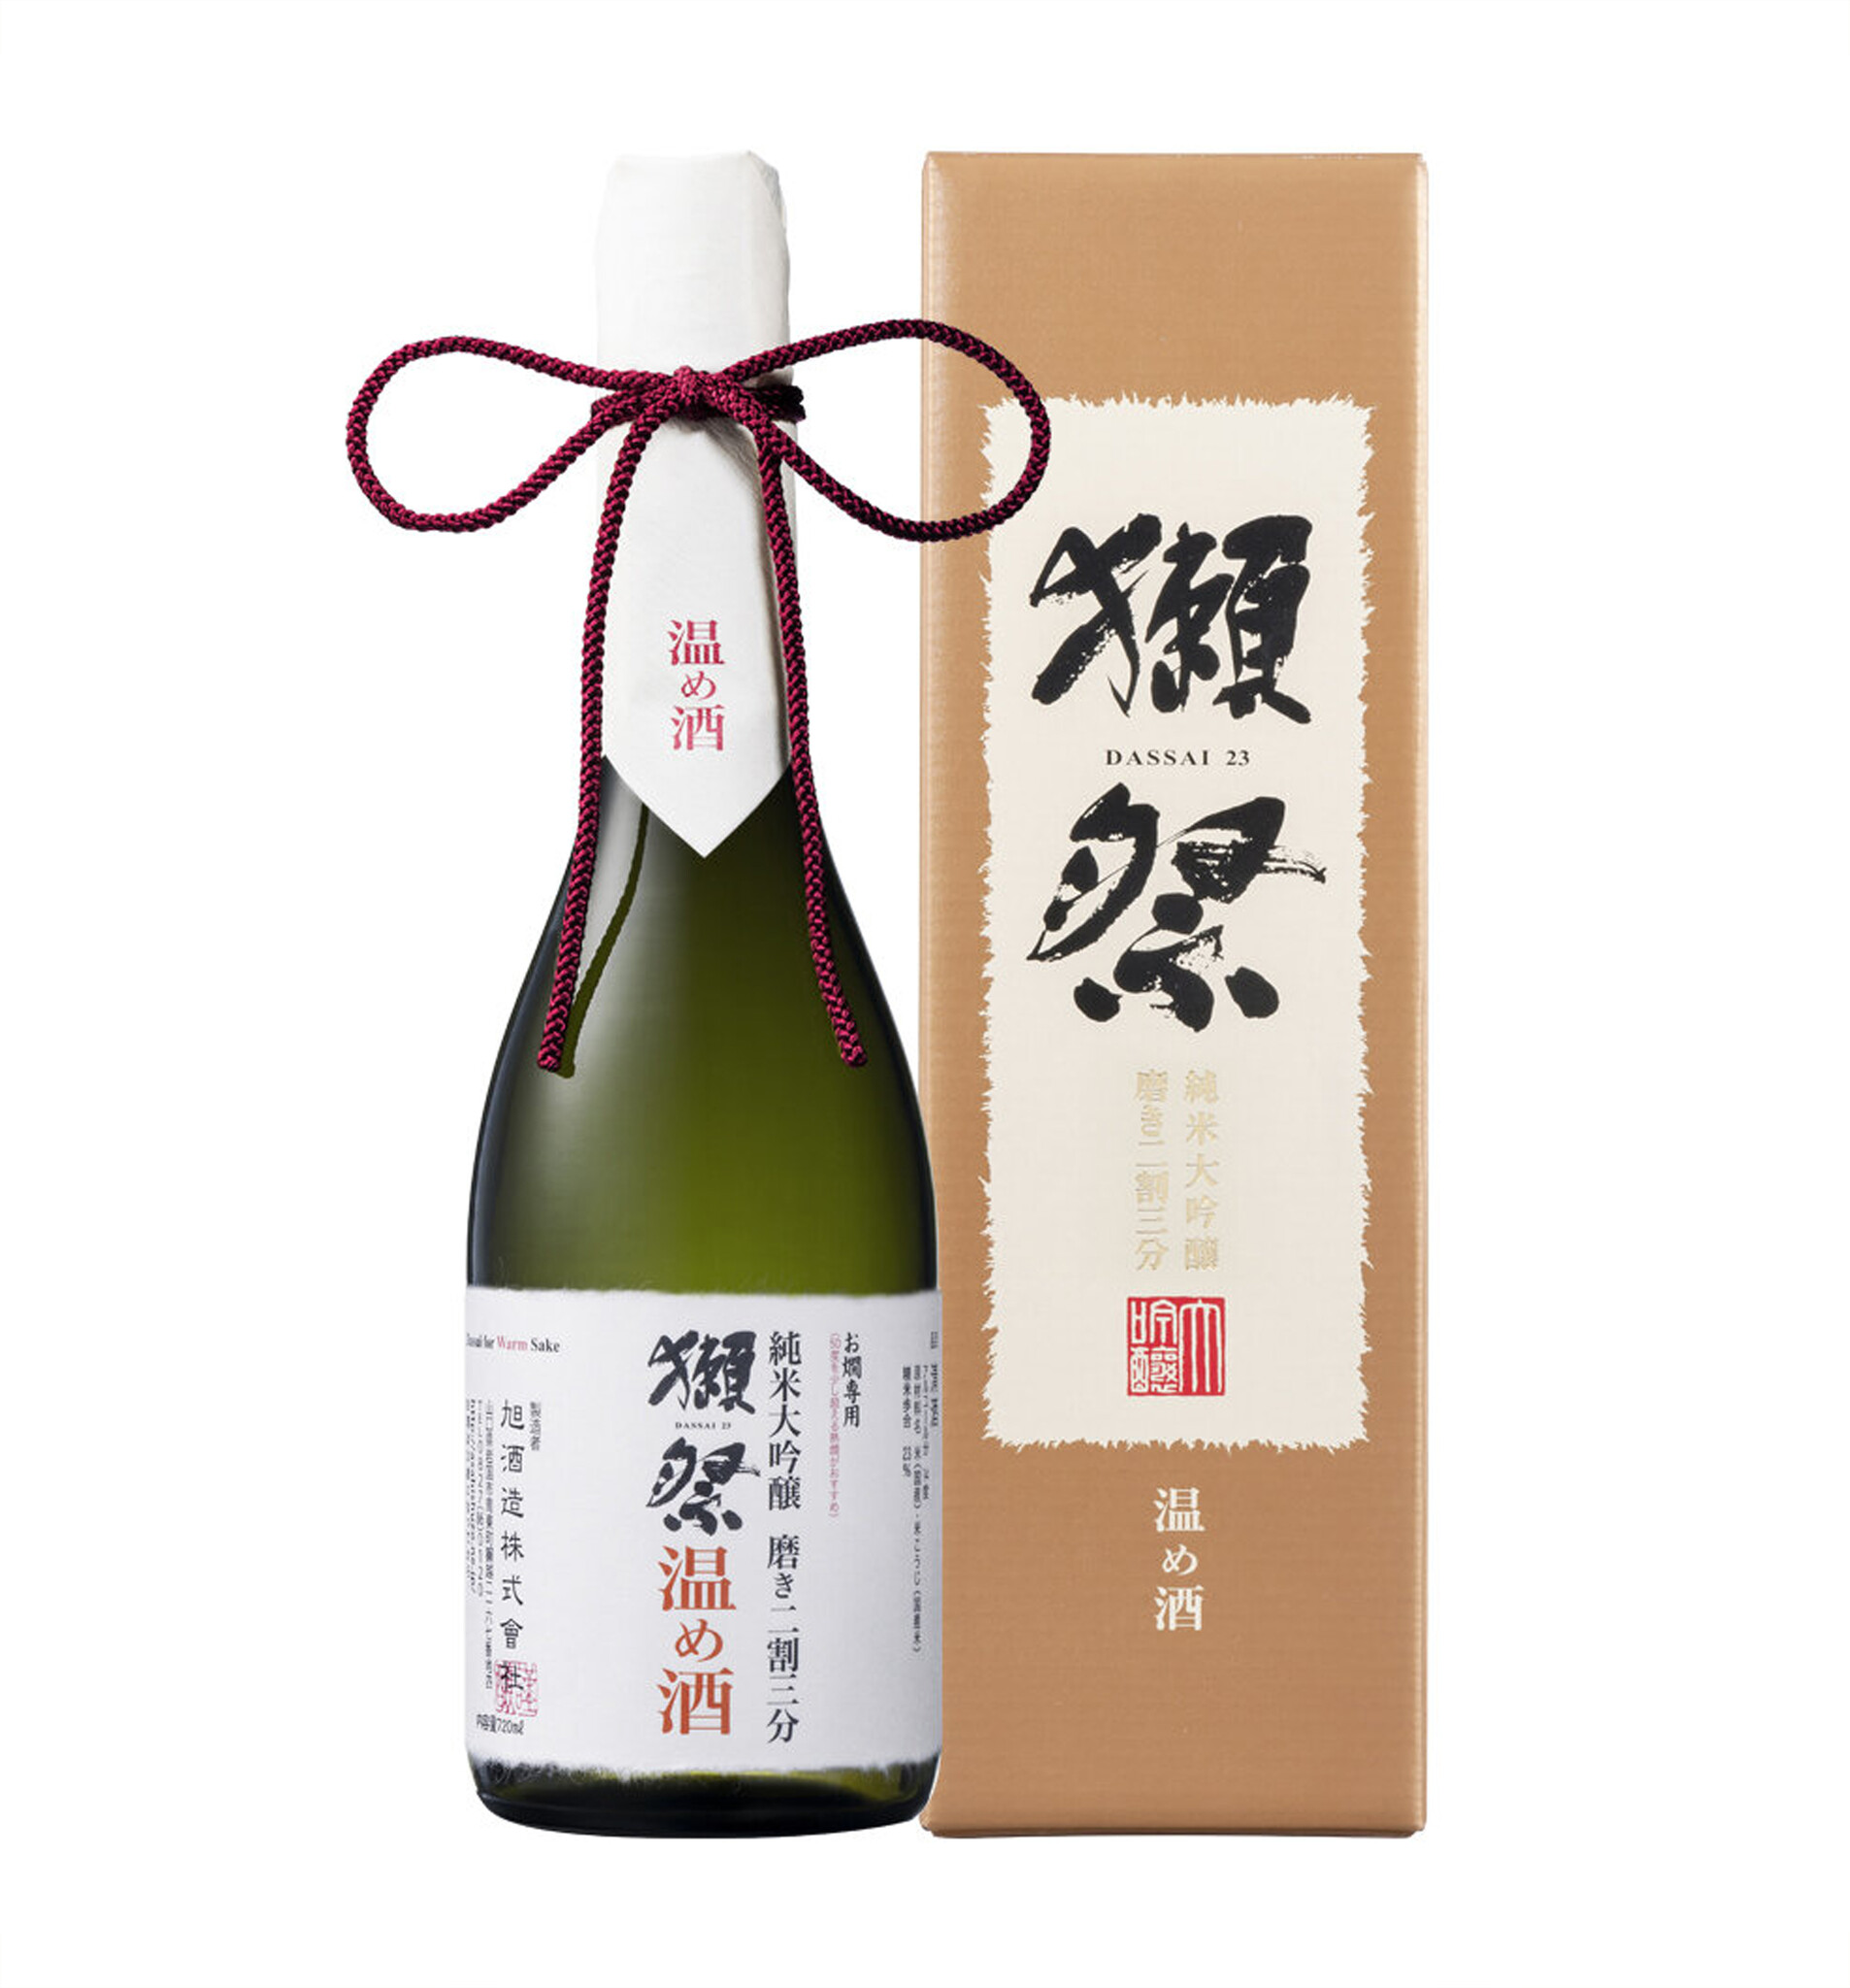 Dassai 23 Hayata Junmai Daiginjo Sake 獭祭早田纯米大吟釀720ml 